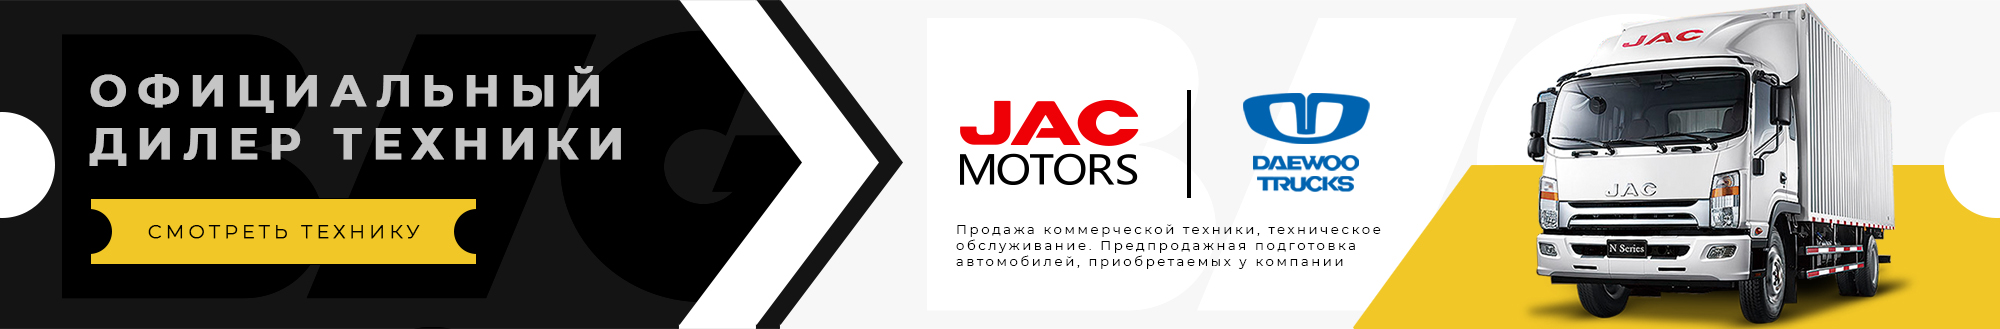 Крупнейший официальный дилер в Алтайском крае по продаже коммерческой техники JAC